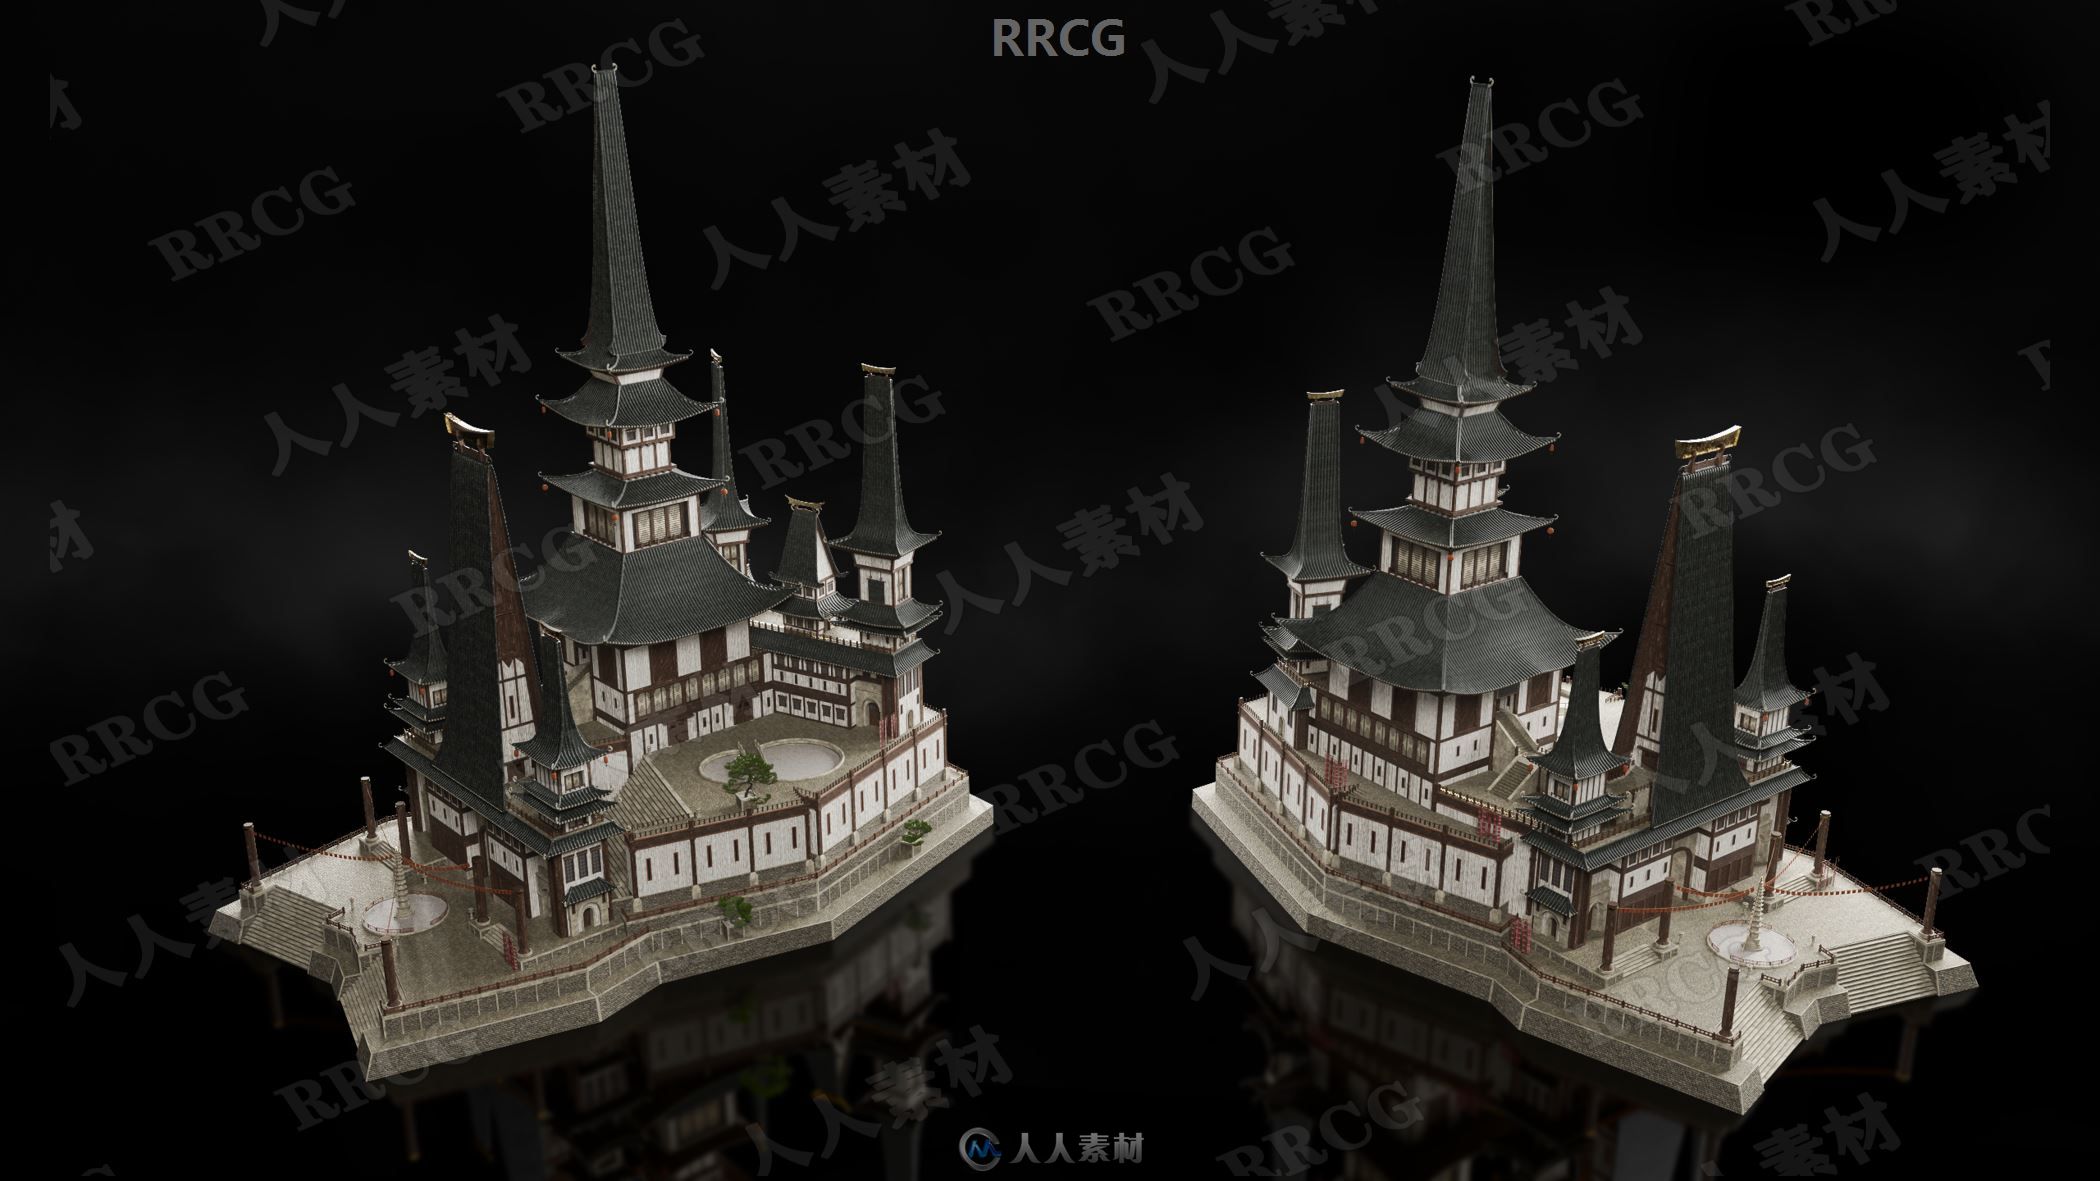 东方神韵香格里拉庙宇建筑景观3D模型合集